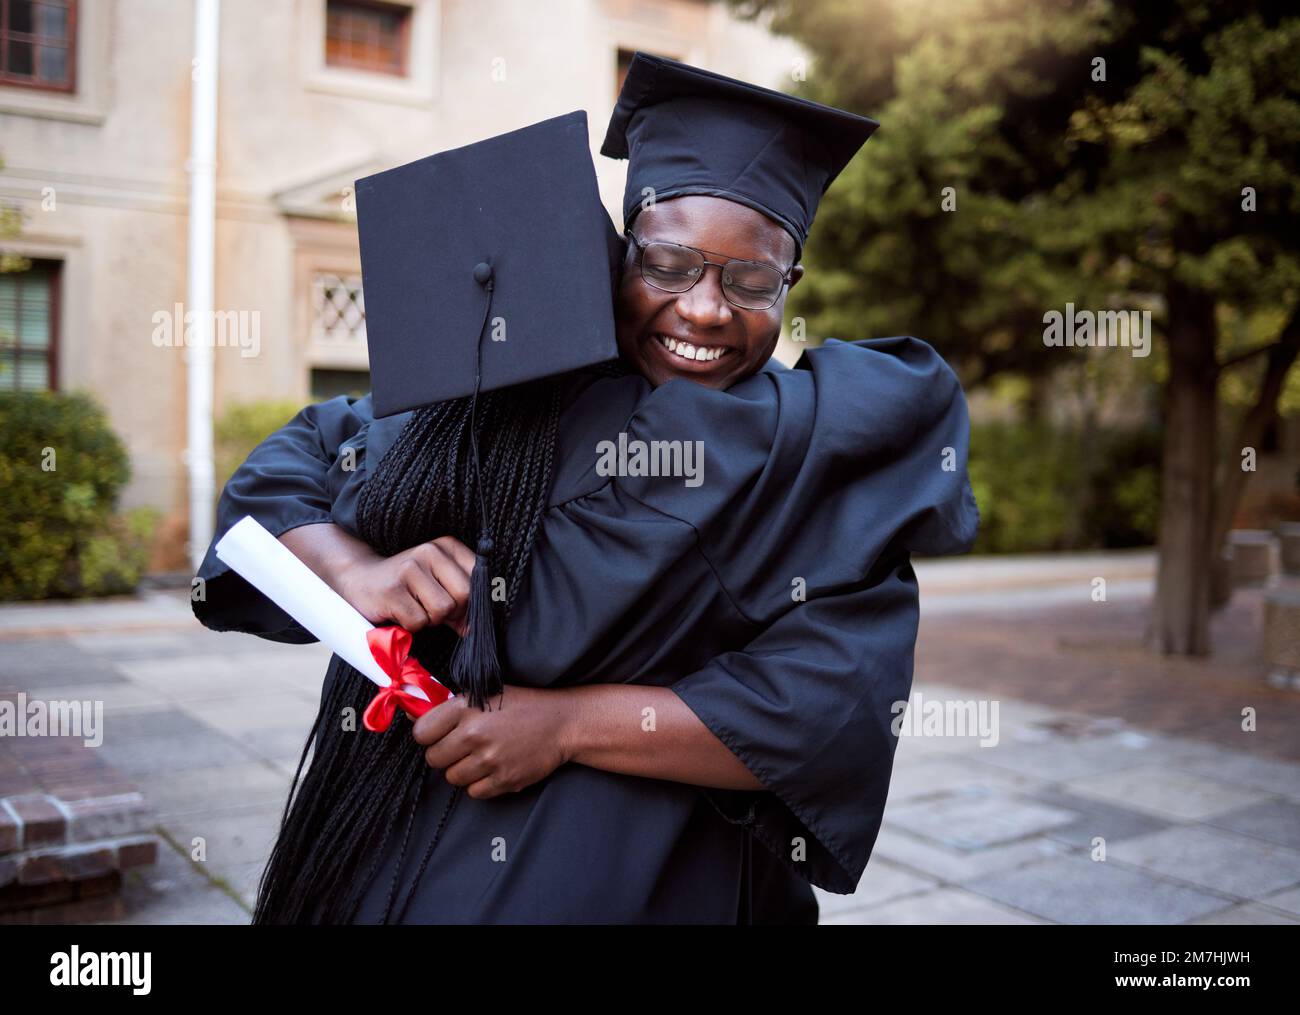 Les Noirs, les hugs et les célébrations lors de la cérémonie de remise des diplômes, le succès d'un diplôme universitaire ou les objectifs d'un diplôme scolaire. Sourire, amis heureux et diplômé Banque D'Images